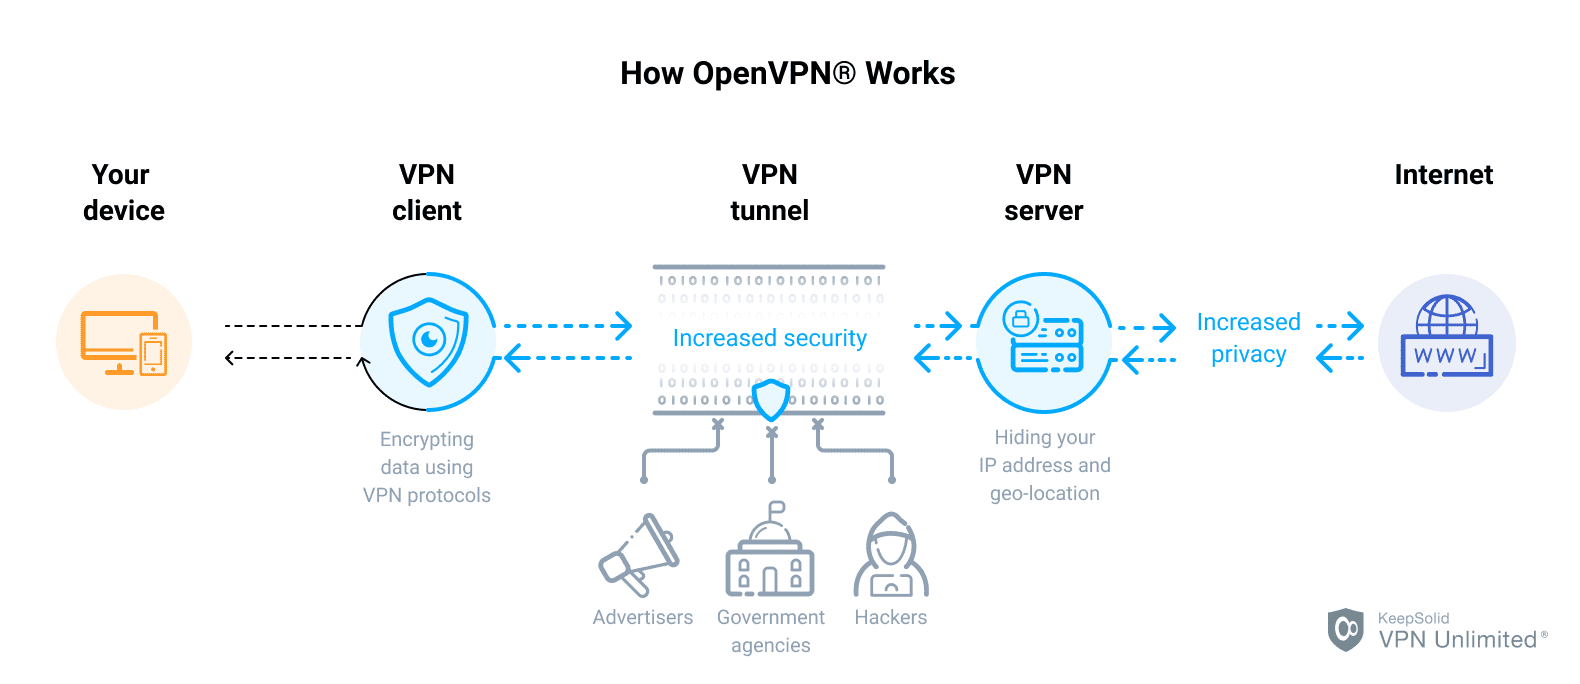 What type of VPN is OpenVPN?